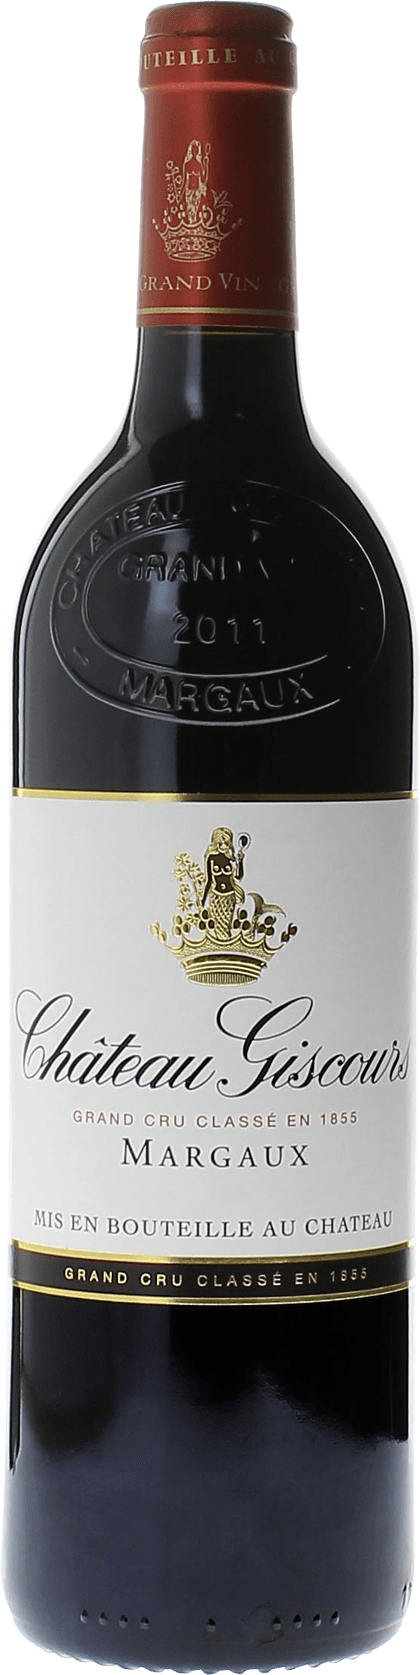 Giscours 1988 3me Grand cru class Margaux, Bordeaux rouge